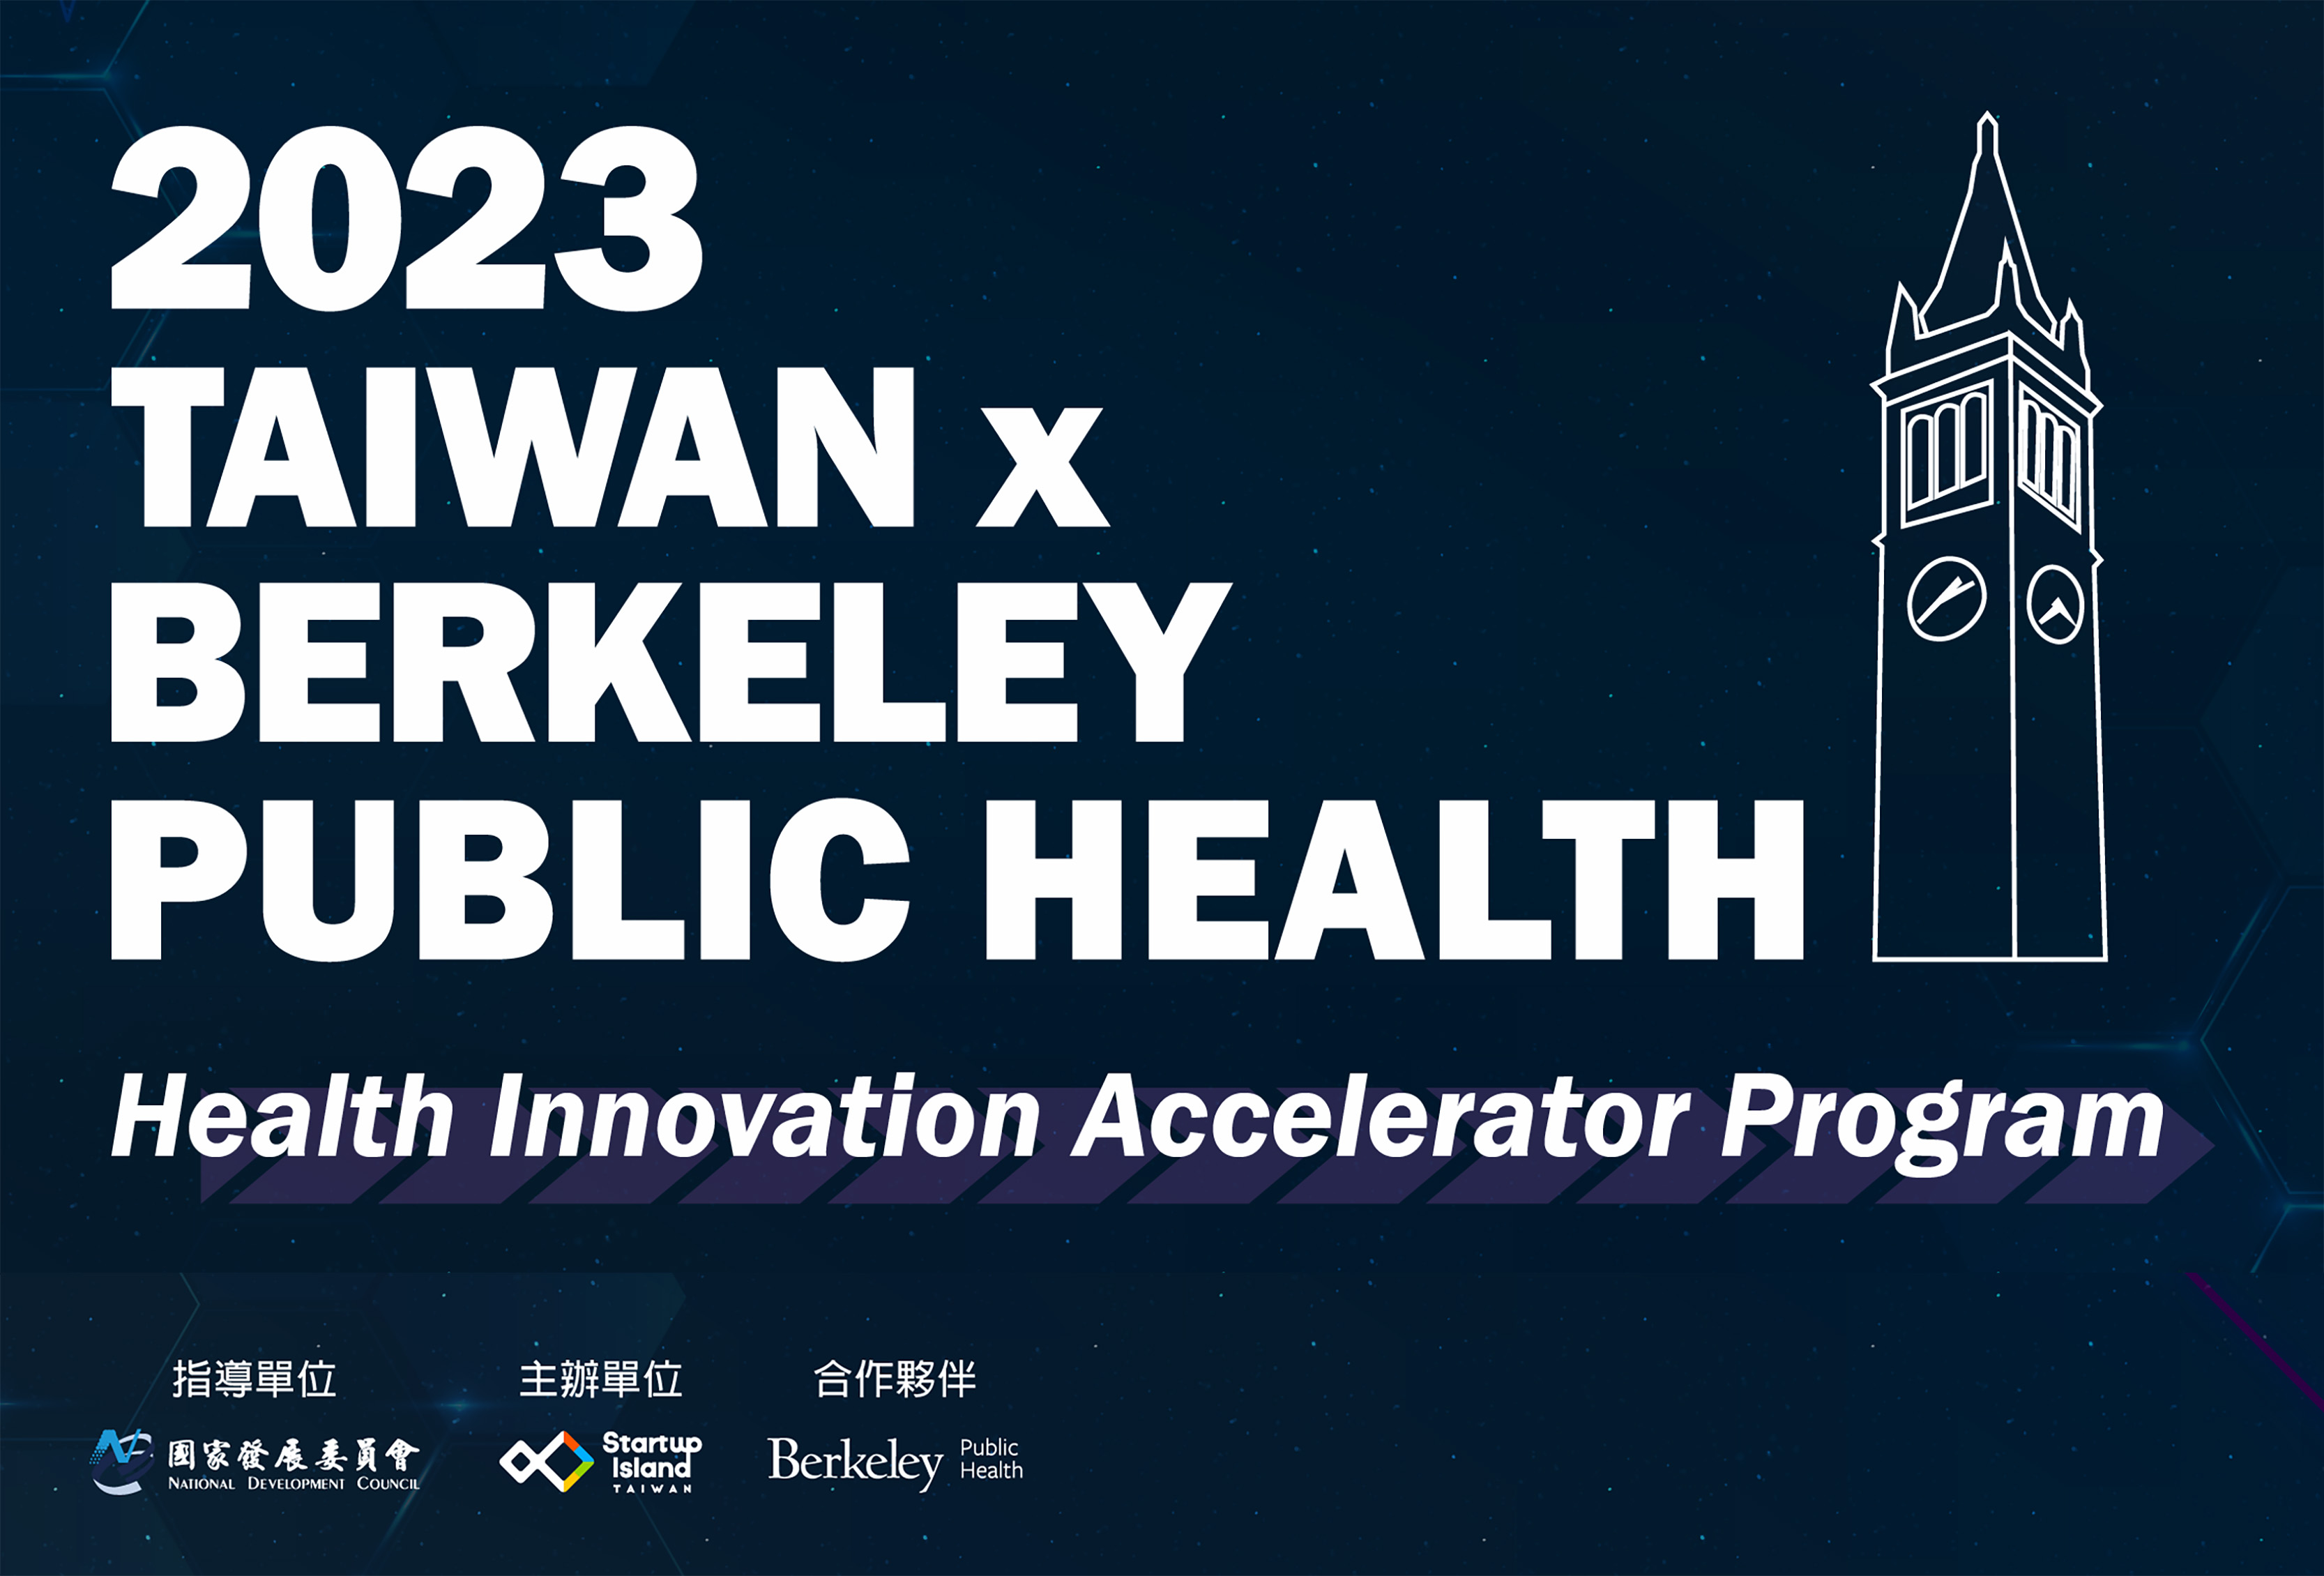 【新創徵案宣傳】2023 Taiwan x Berkeley Public Health 生醫創新加速培訓計畫 | Startup Island TAIWAN